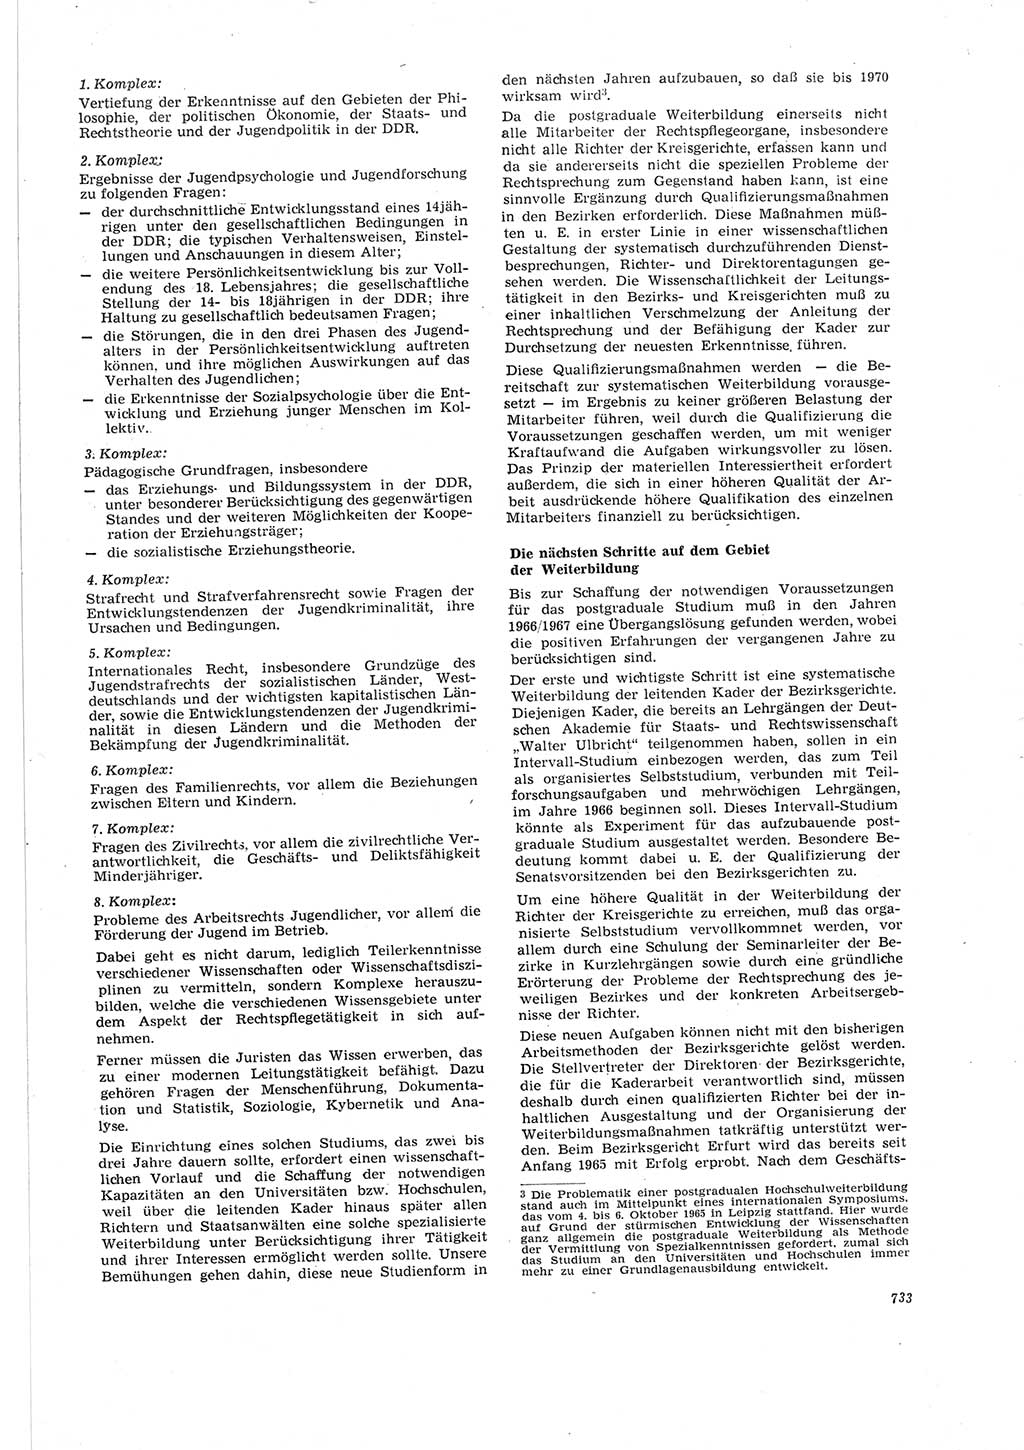 Neue Justiz (NJ), Zeitschrift für Recht und Rechtswissenschaft [Deutsche Demokratische Republik (DDR)], 19. Jahrgang 1965, Seite 733 (NJ DDR 1965, S. 733)